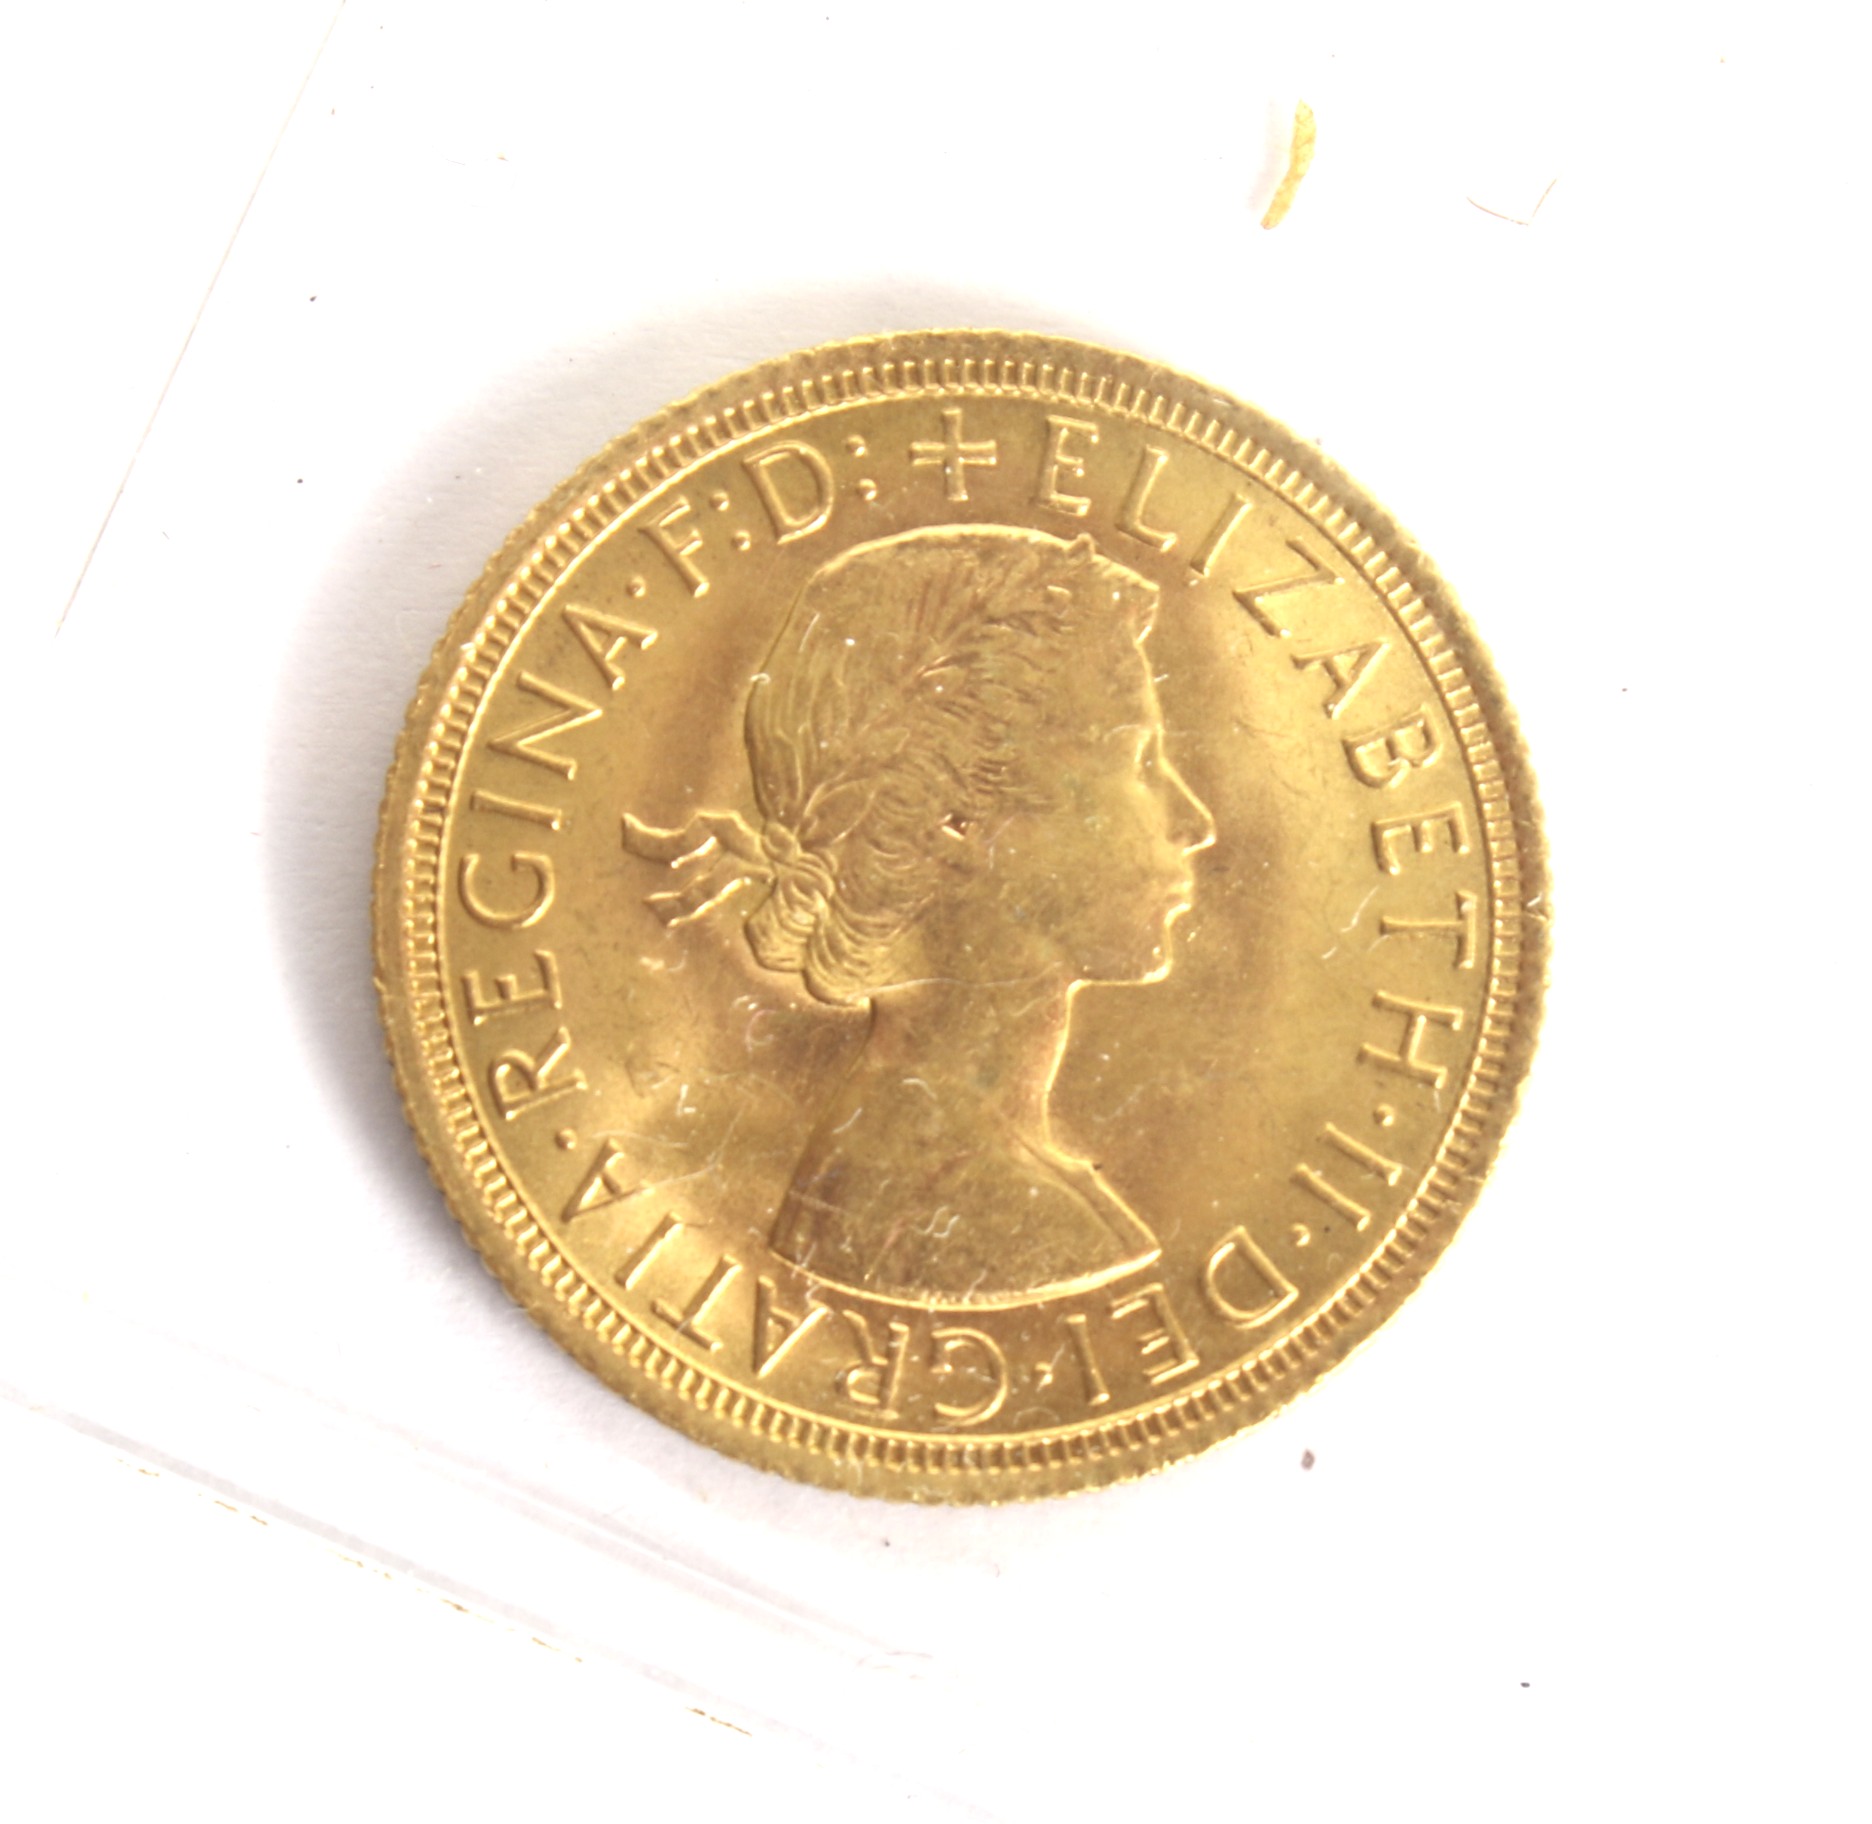 A 1966 sovereign coin.